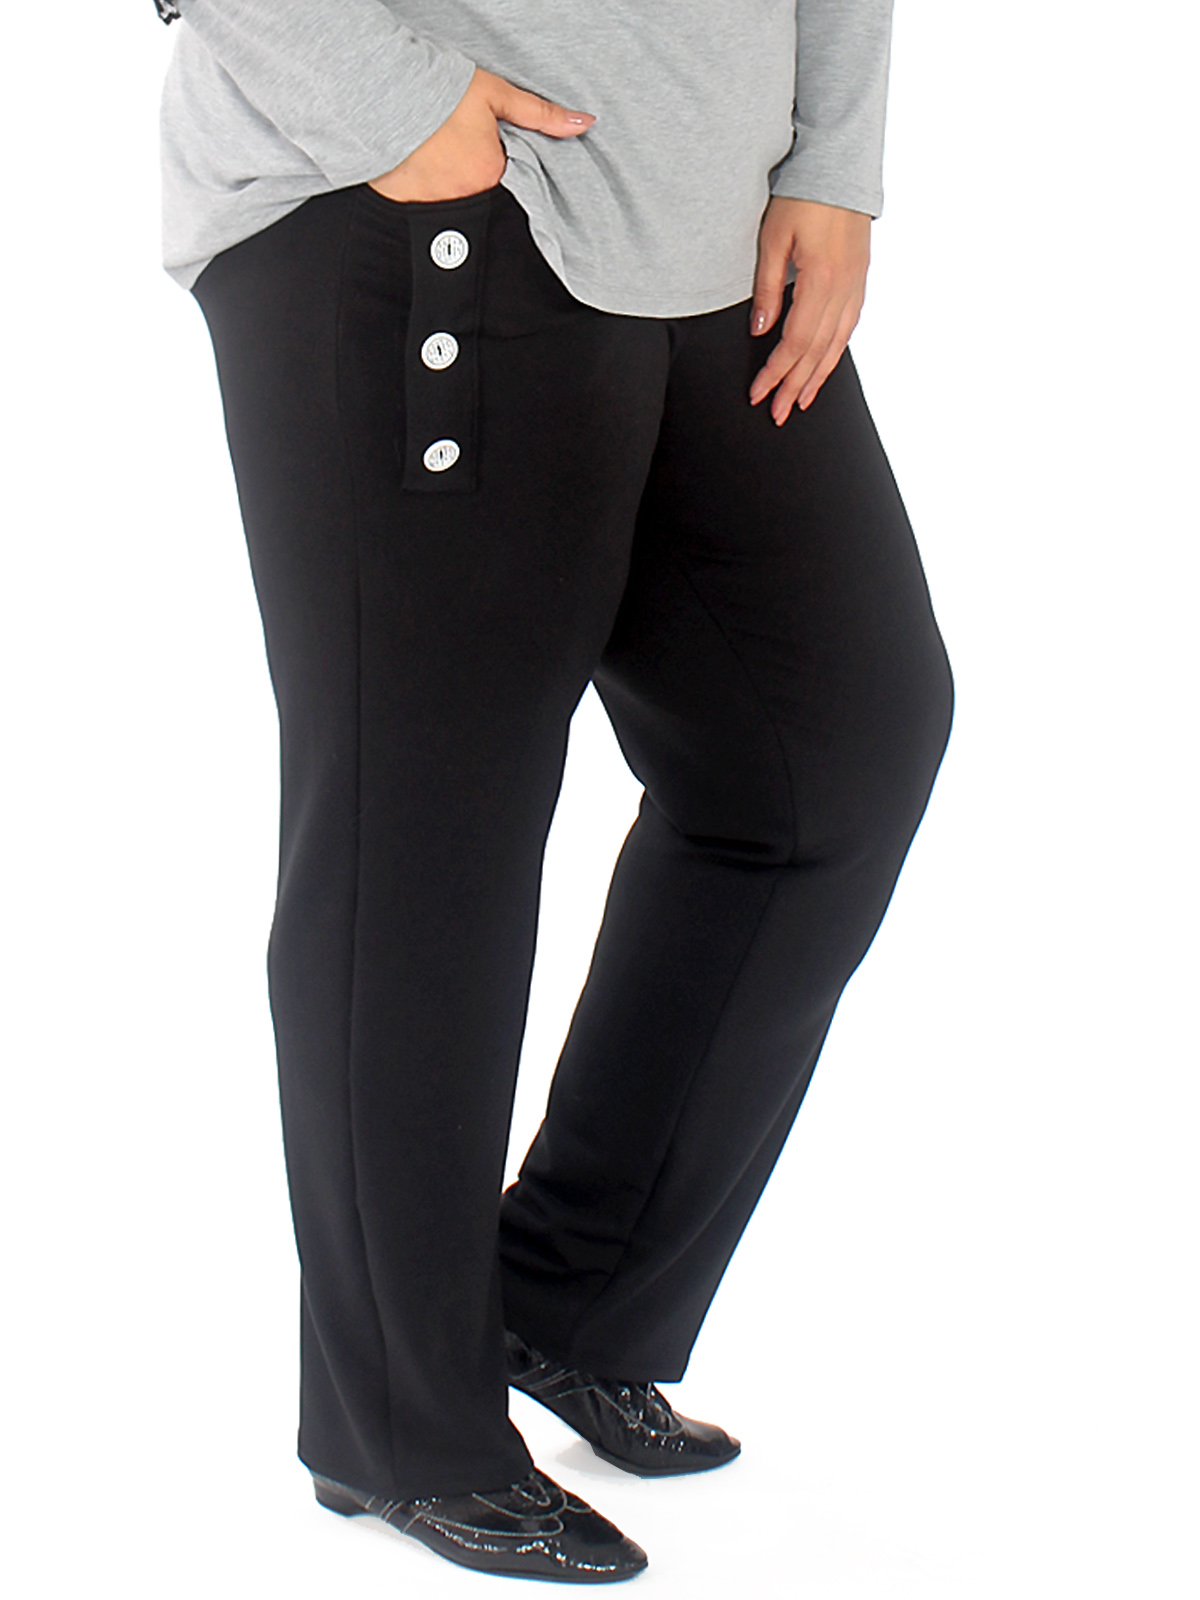 Трикотажные брюки с декоративными пуговицами, черные